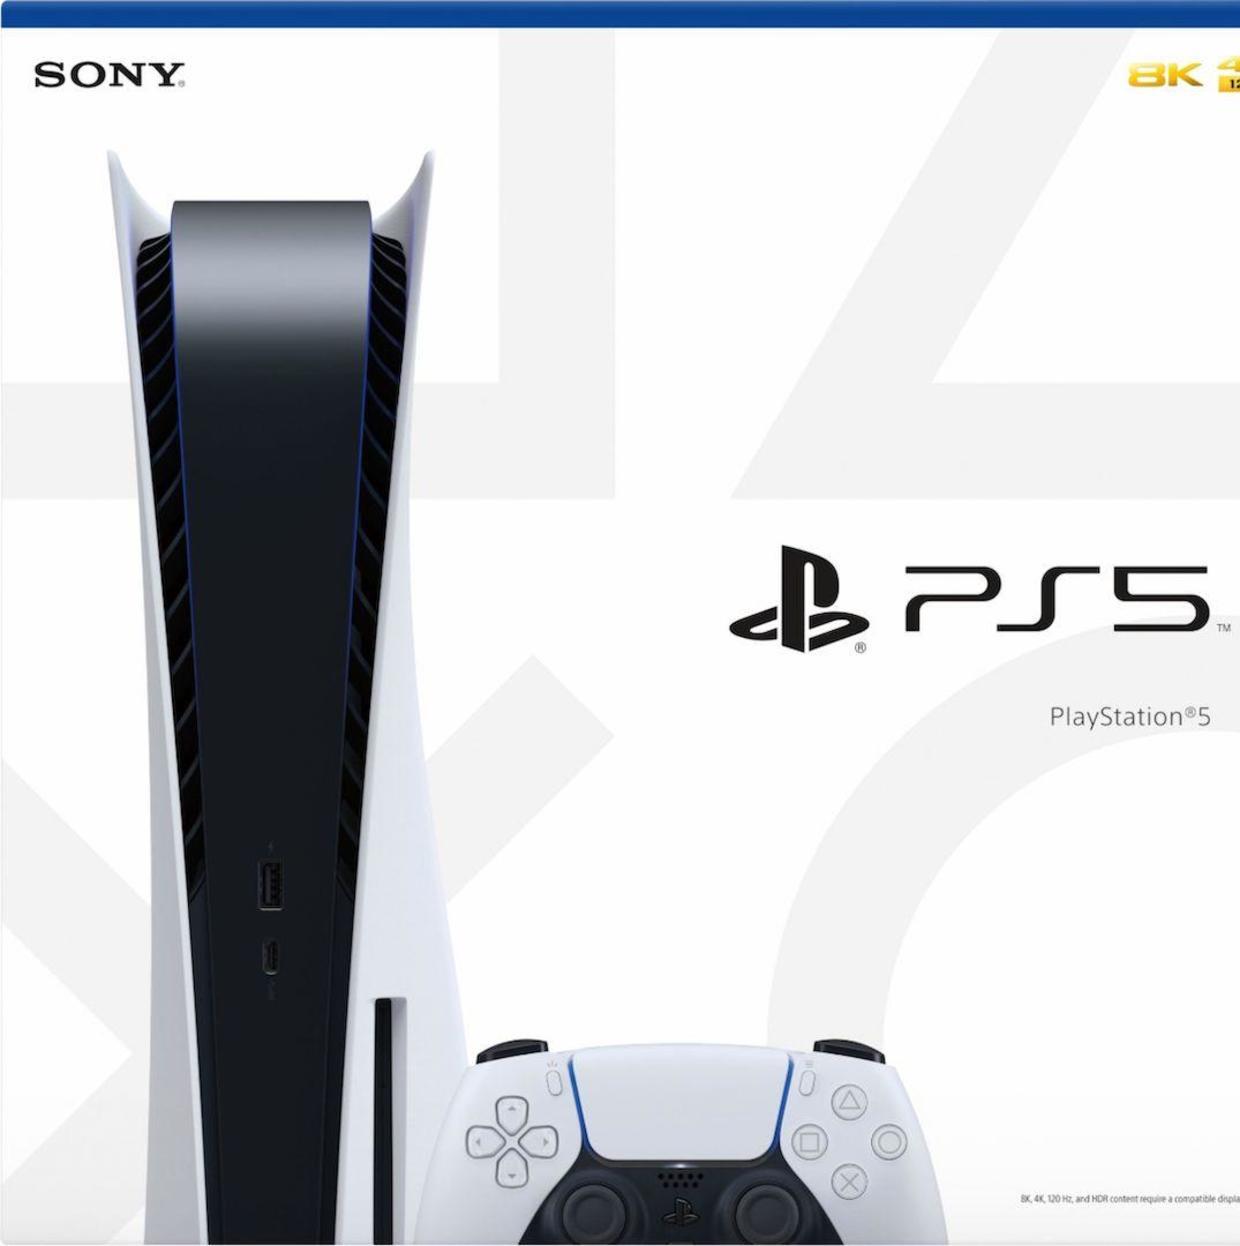 Sony PS5 box